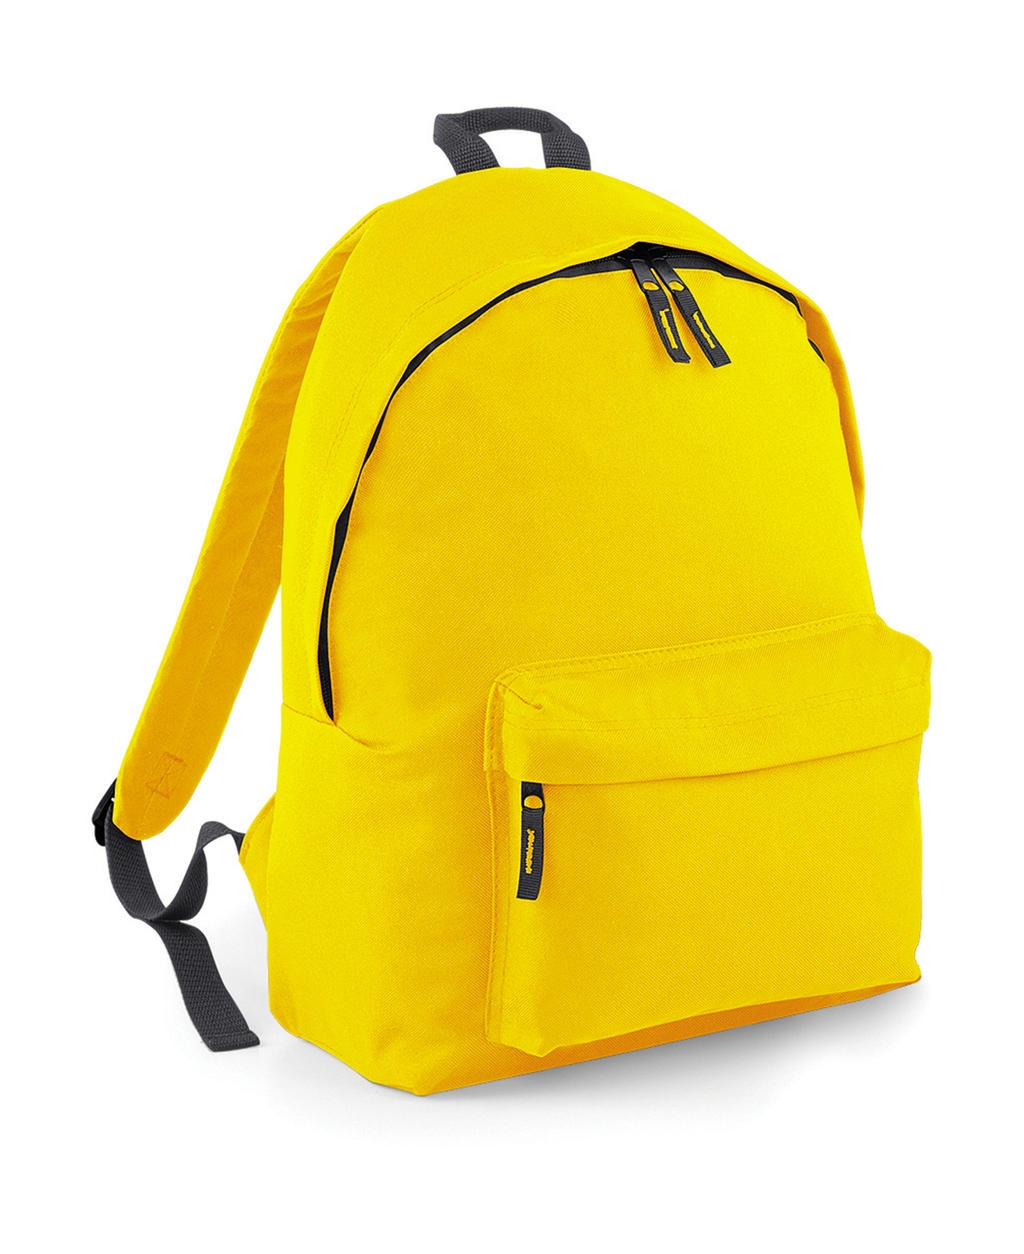 Fashion Backpack Yellow/Graphite Grey Jaune